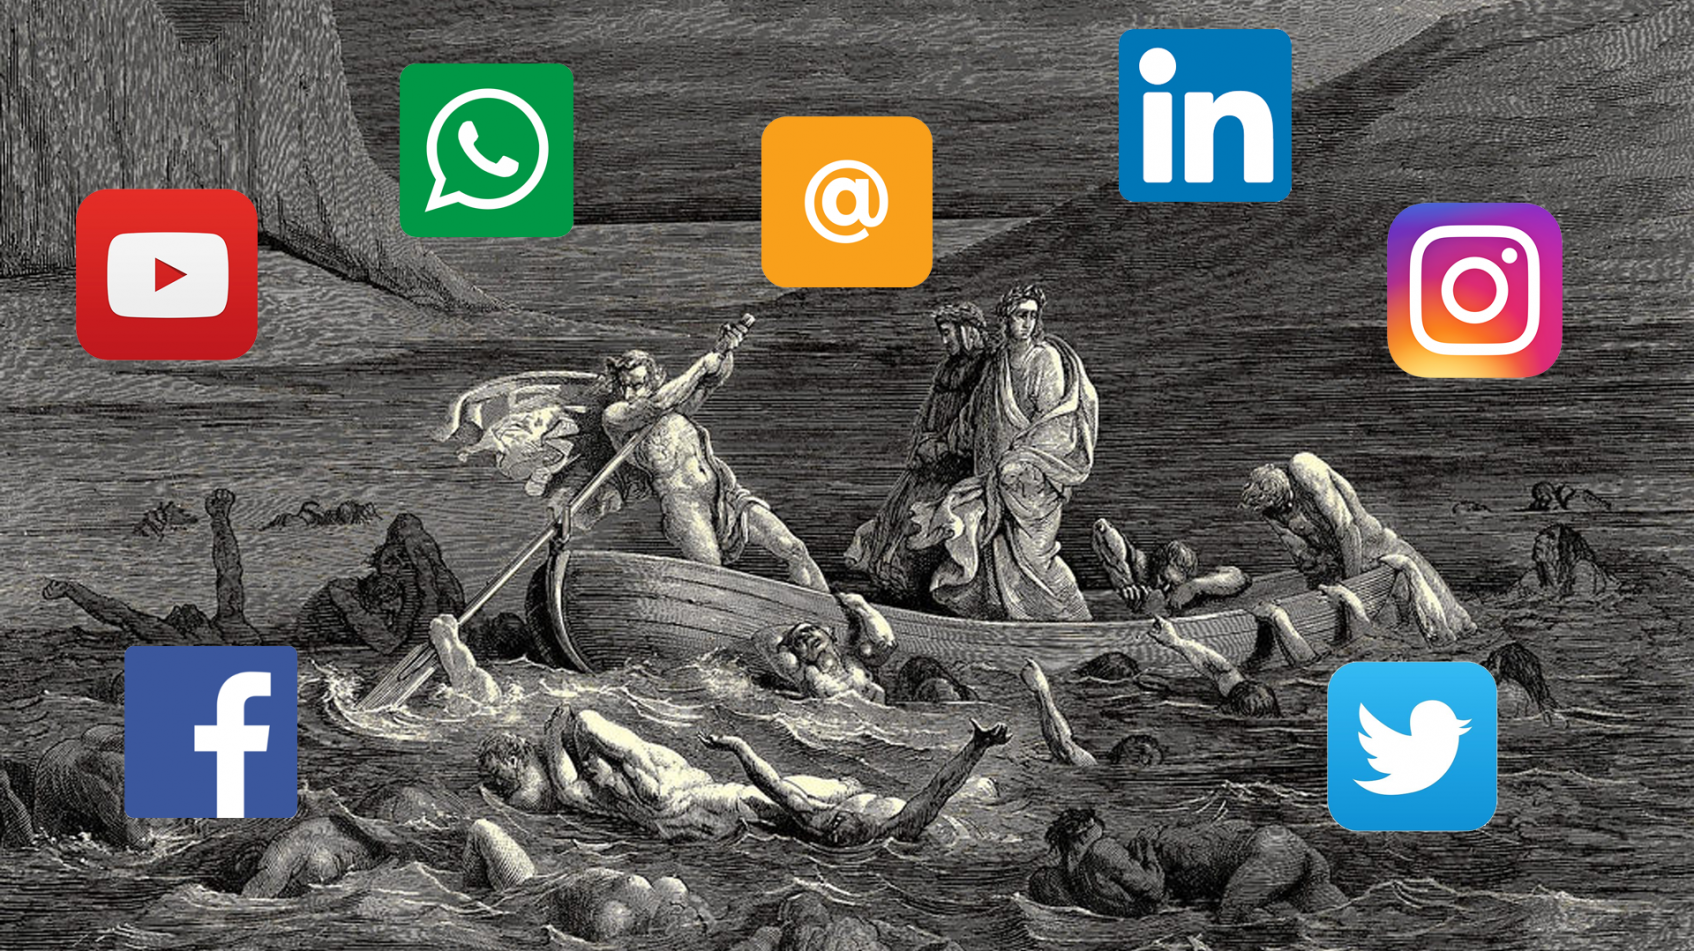 Socialmedia